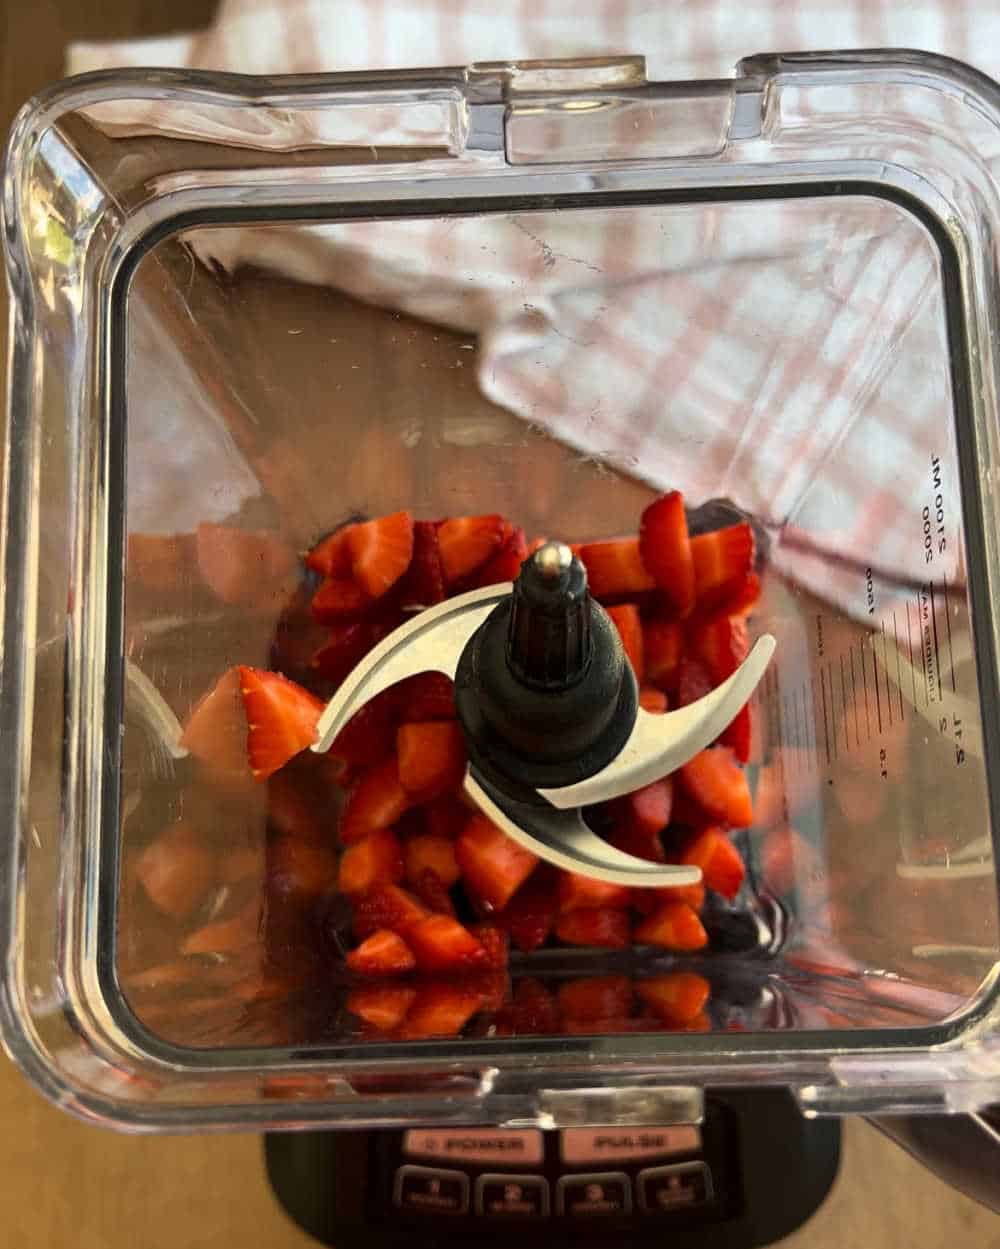 sliced strawberries in blender.